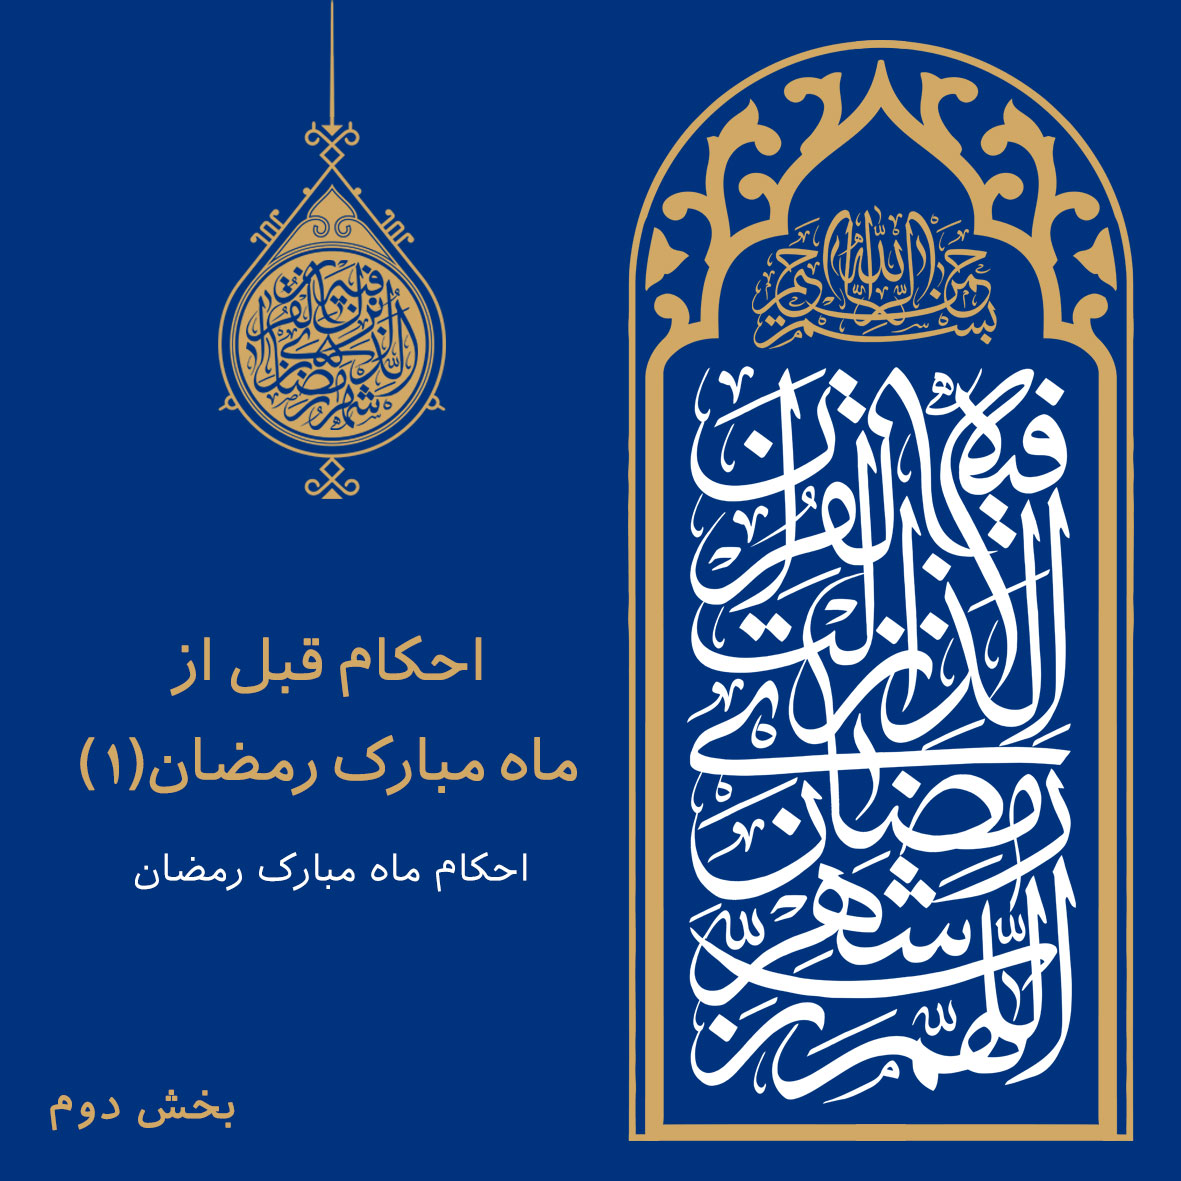 احكام روزه ماه رمضان: بخش 2: احکام قبل از ماه رمضان (1)